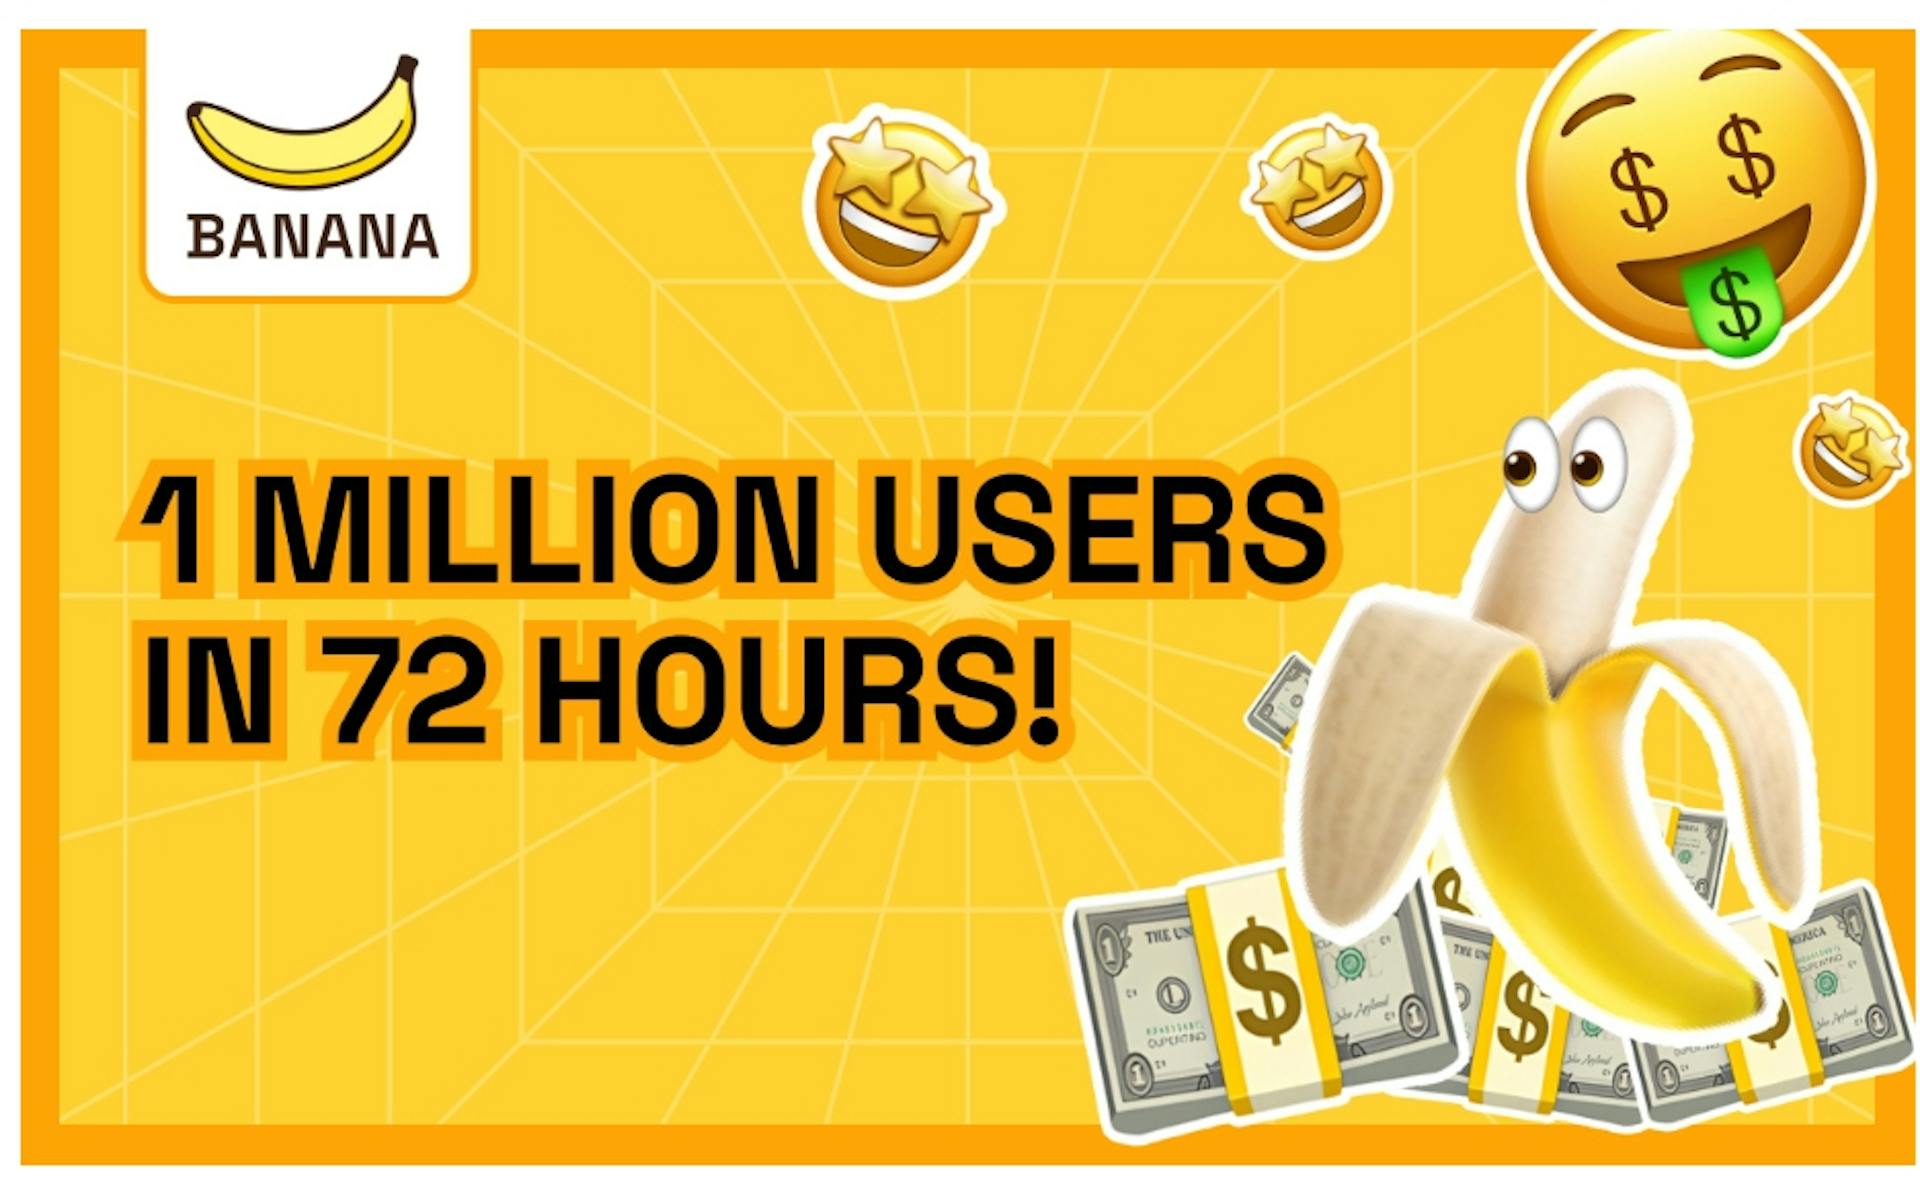 featured image - TON ゲーム「BANANA」が 72 時間で 100 万人のユーザーを突破